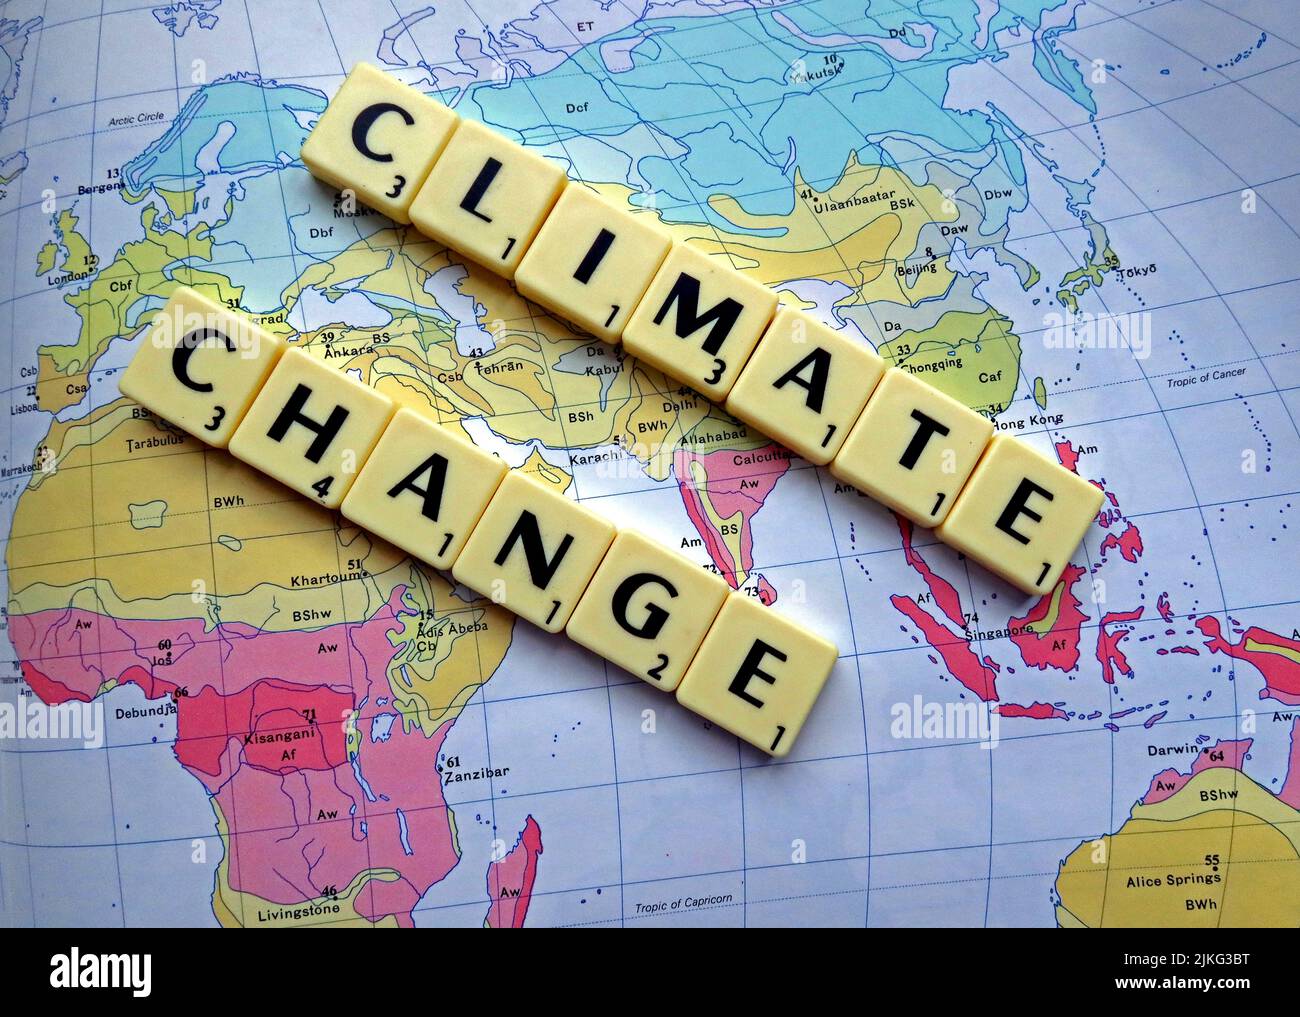 Cambiamento climatico , riscaldamento globale scritto in lettere Scrabble su una mappa Foto Stock